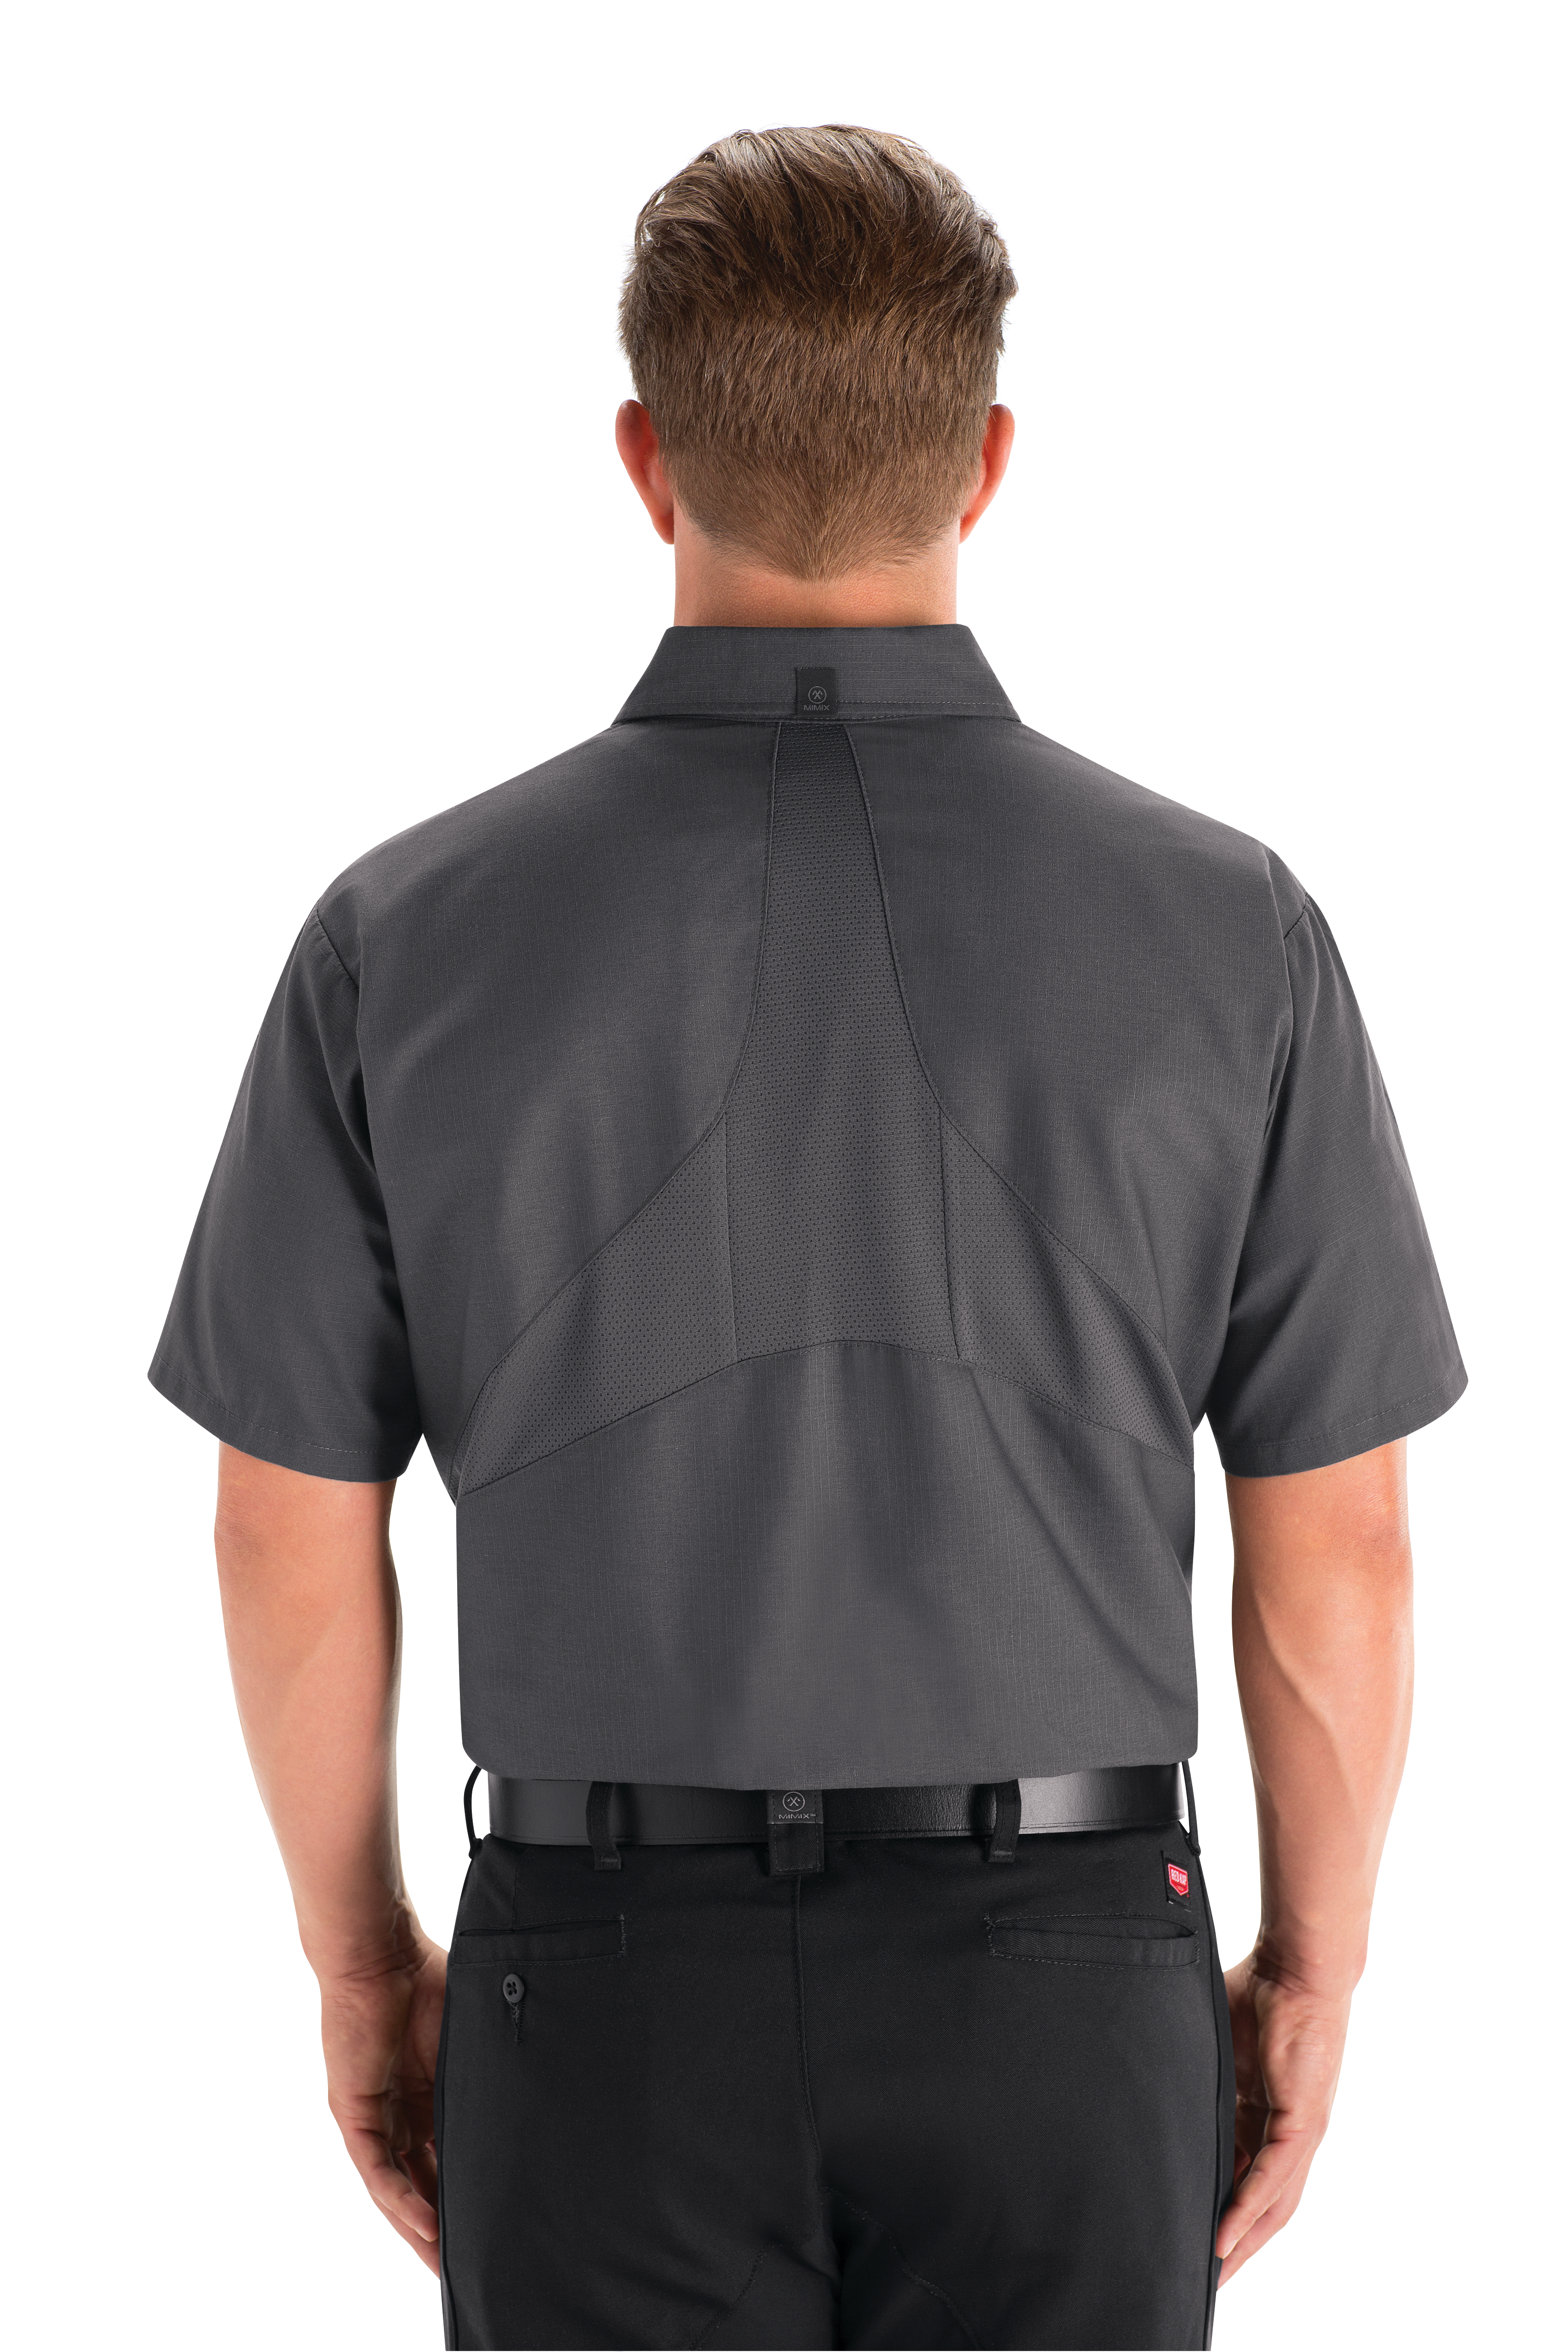 Red Kap MIMIX Men's Short Sleeve Uniform Work Shirt Charcoal 